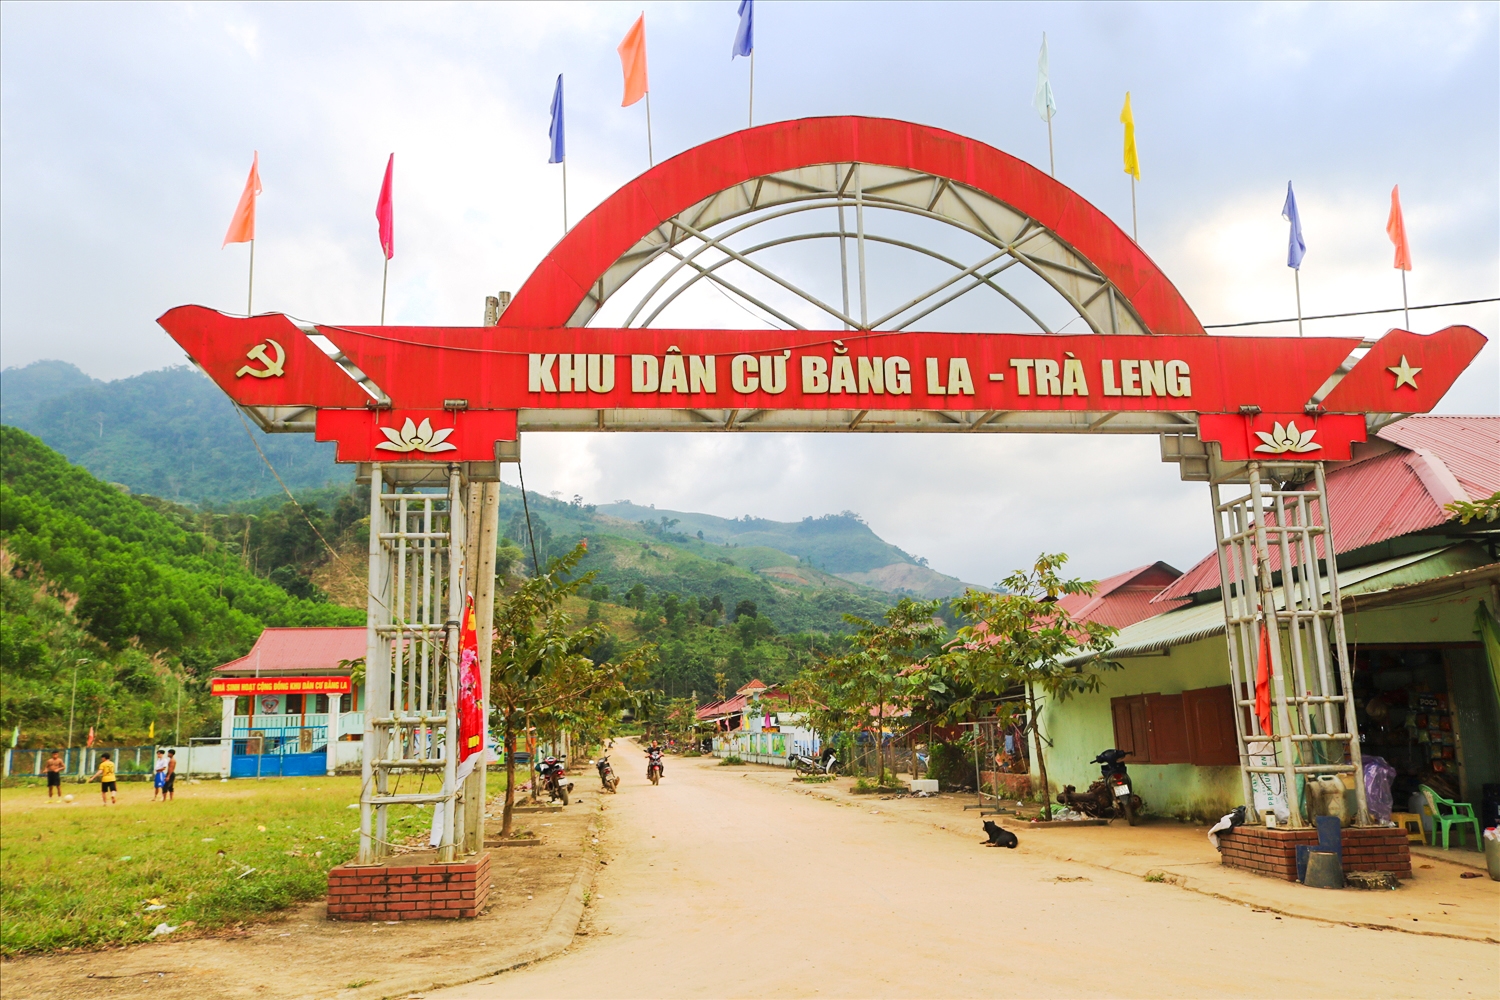 Khu dân cư Bằng La với 39 hộ dân Mnông tái định cư sau trận sạt lở năm 2020